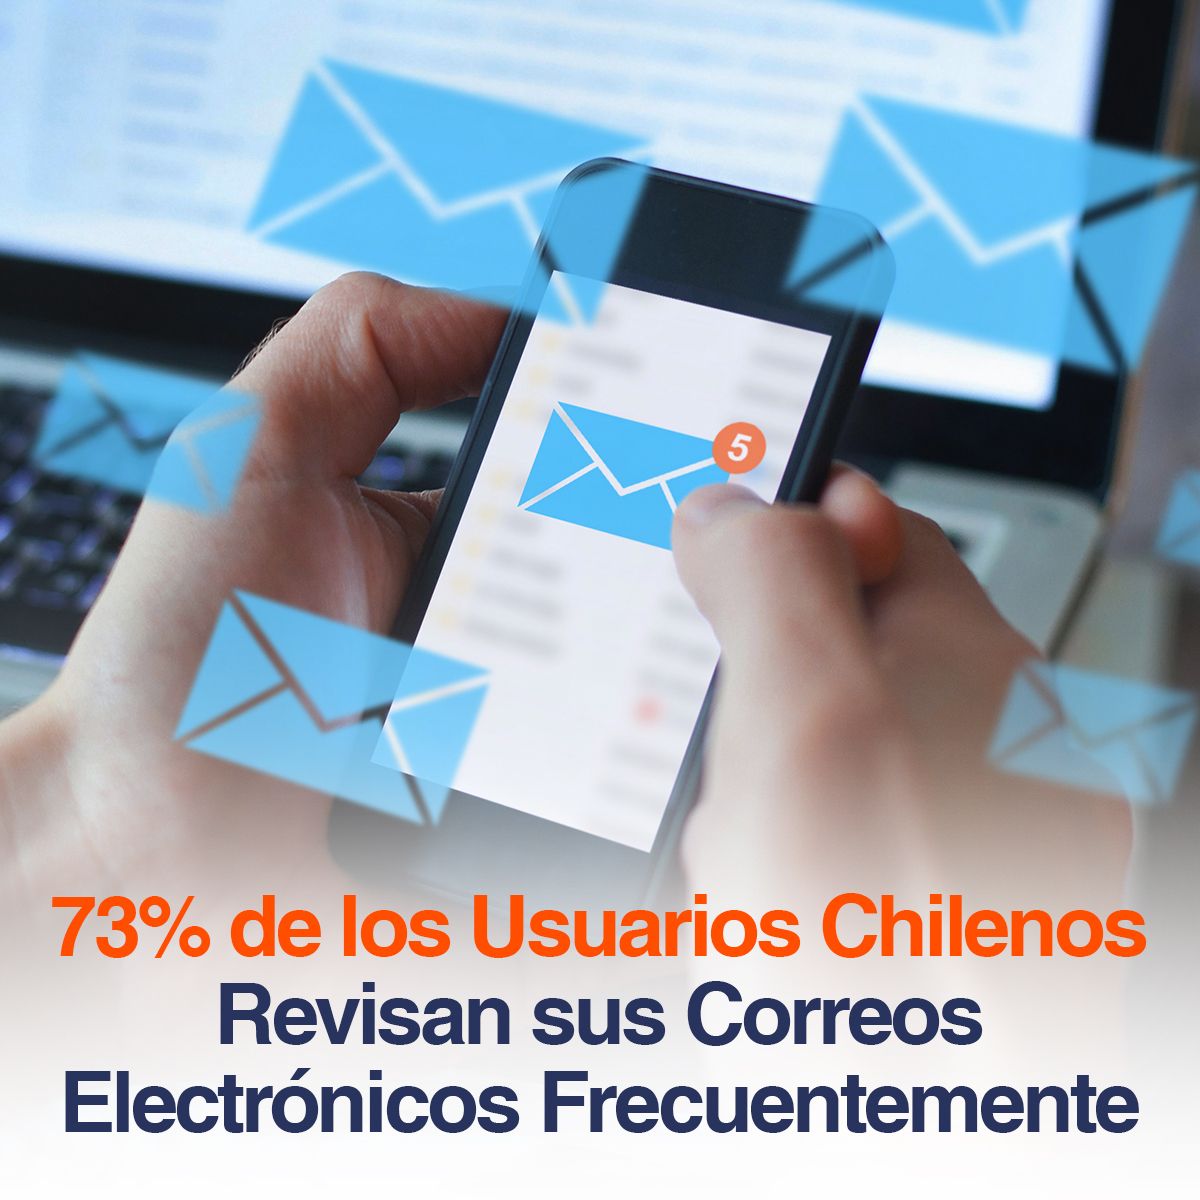 73% de los Usuarios Chilenos Revisan sus Correos Electrónicos Frecuentemente